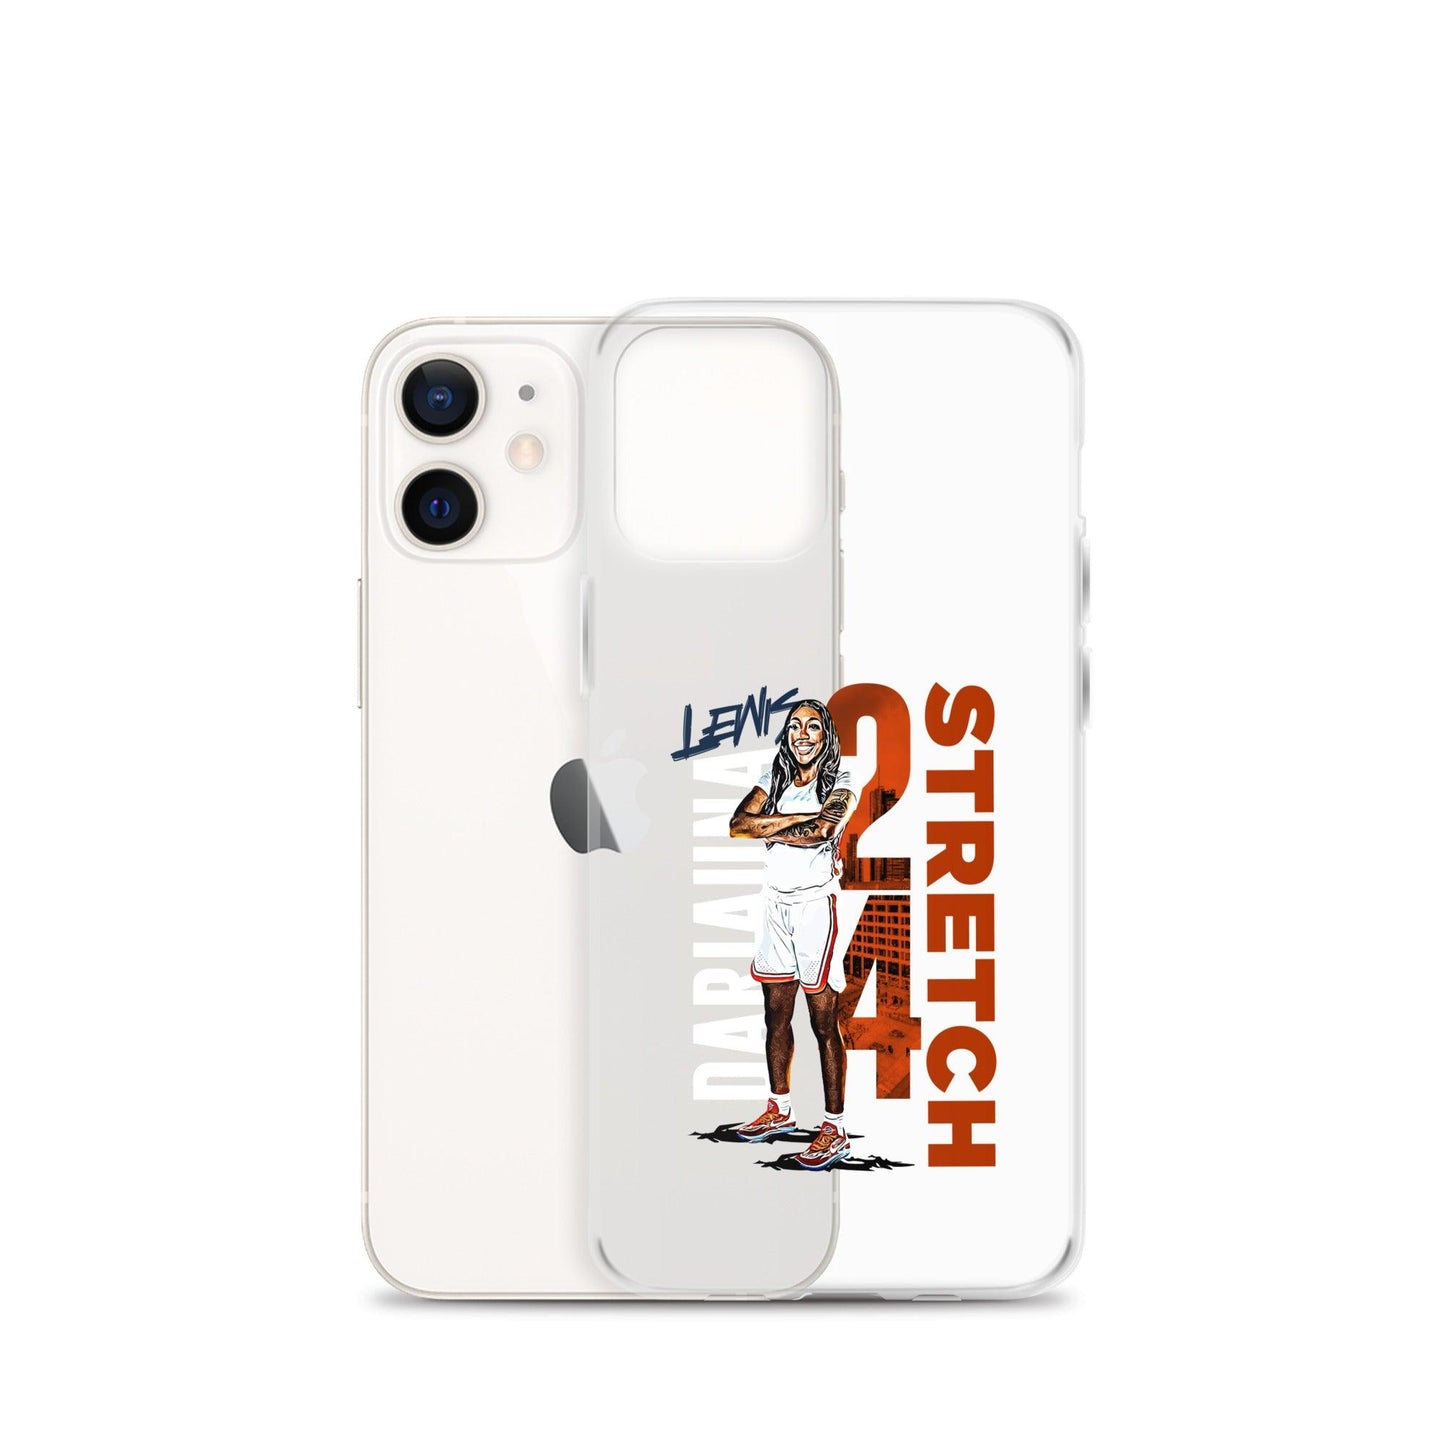 Dariauna Lewis "Stretch" iPhone® - Fan Arch